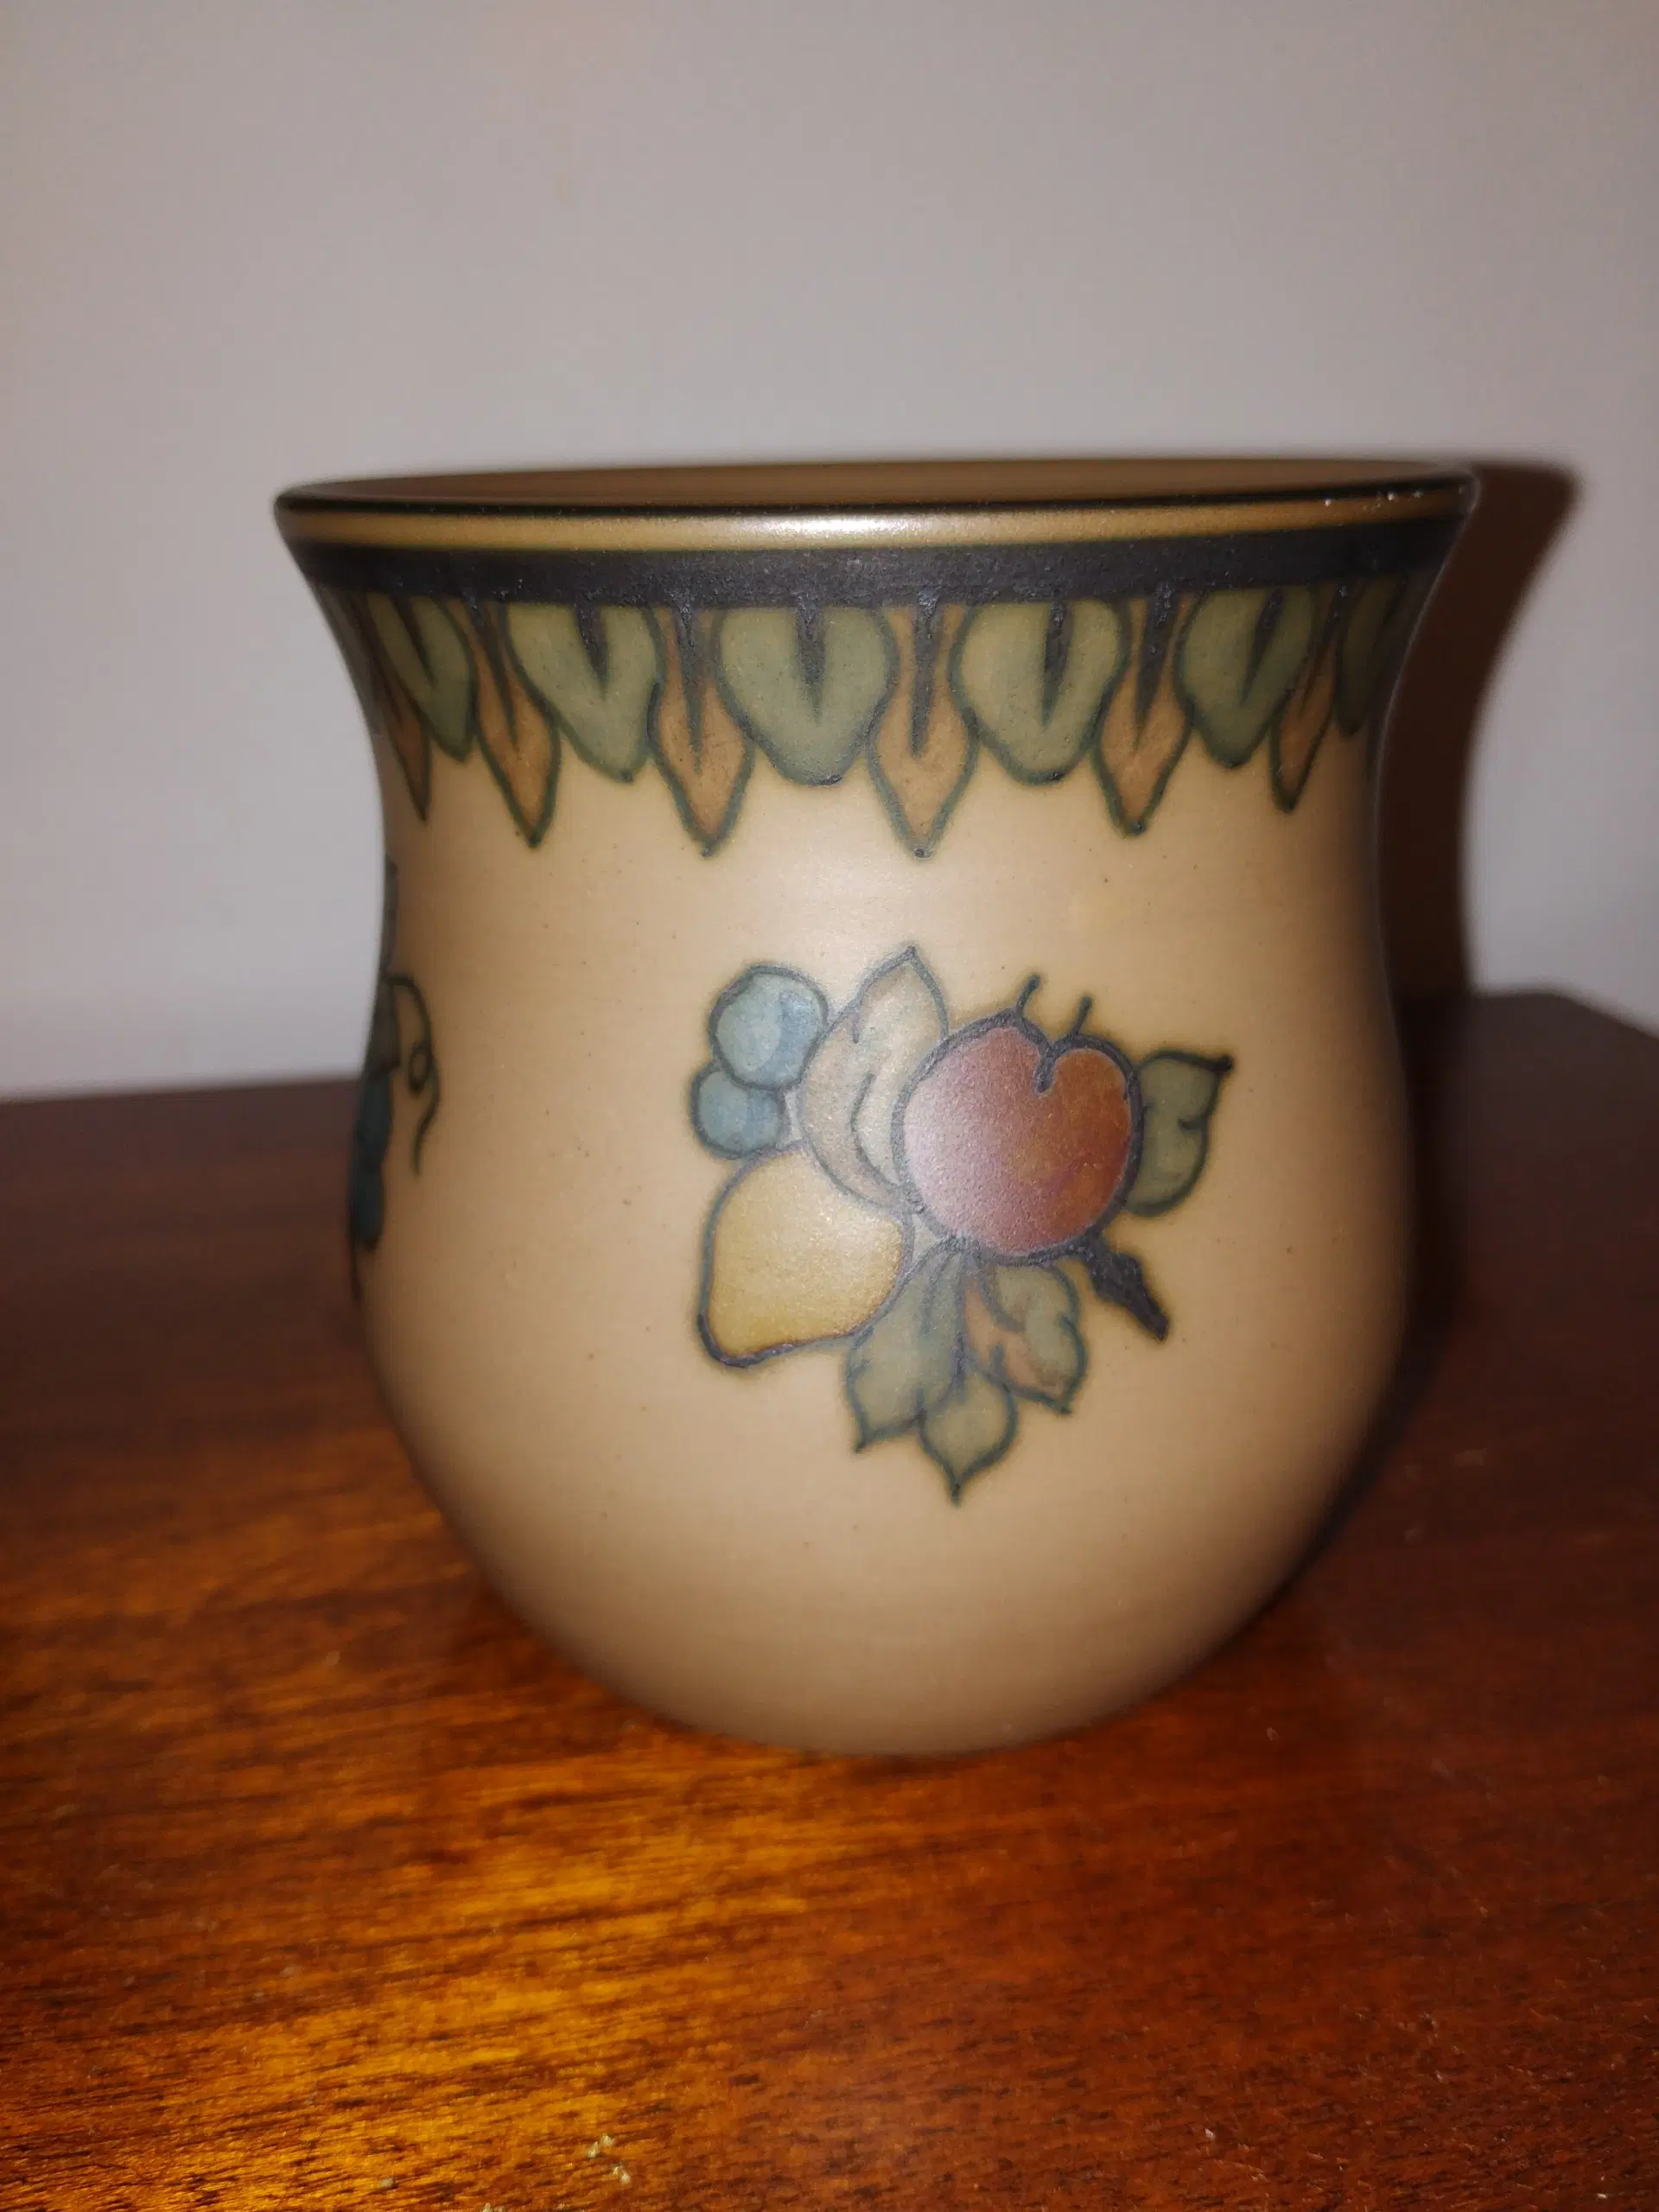 Hjorth keramik vase/krukke